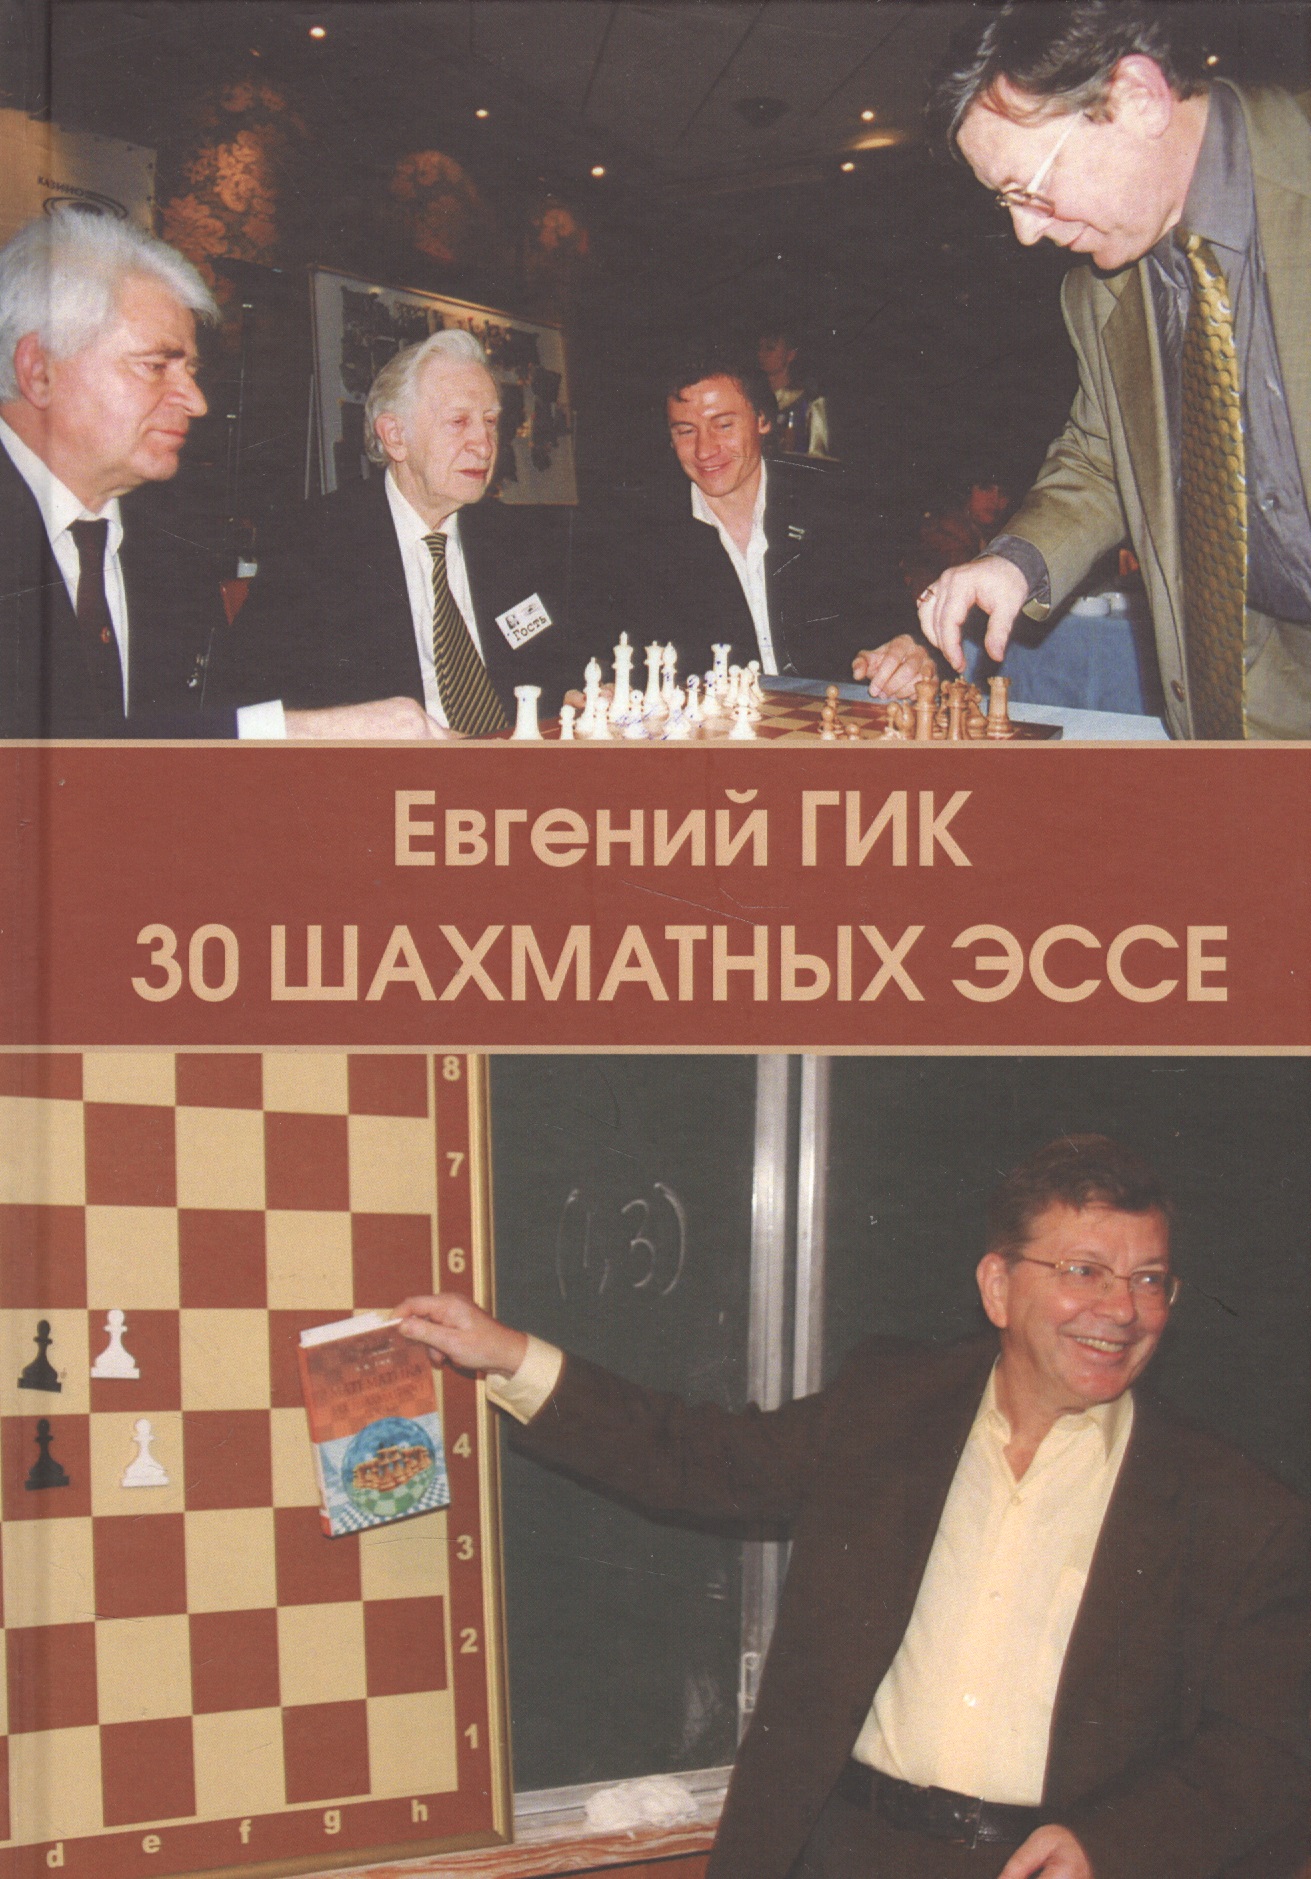 Гик Евгений Яковлевич - 30 шахматных эссе